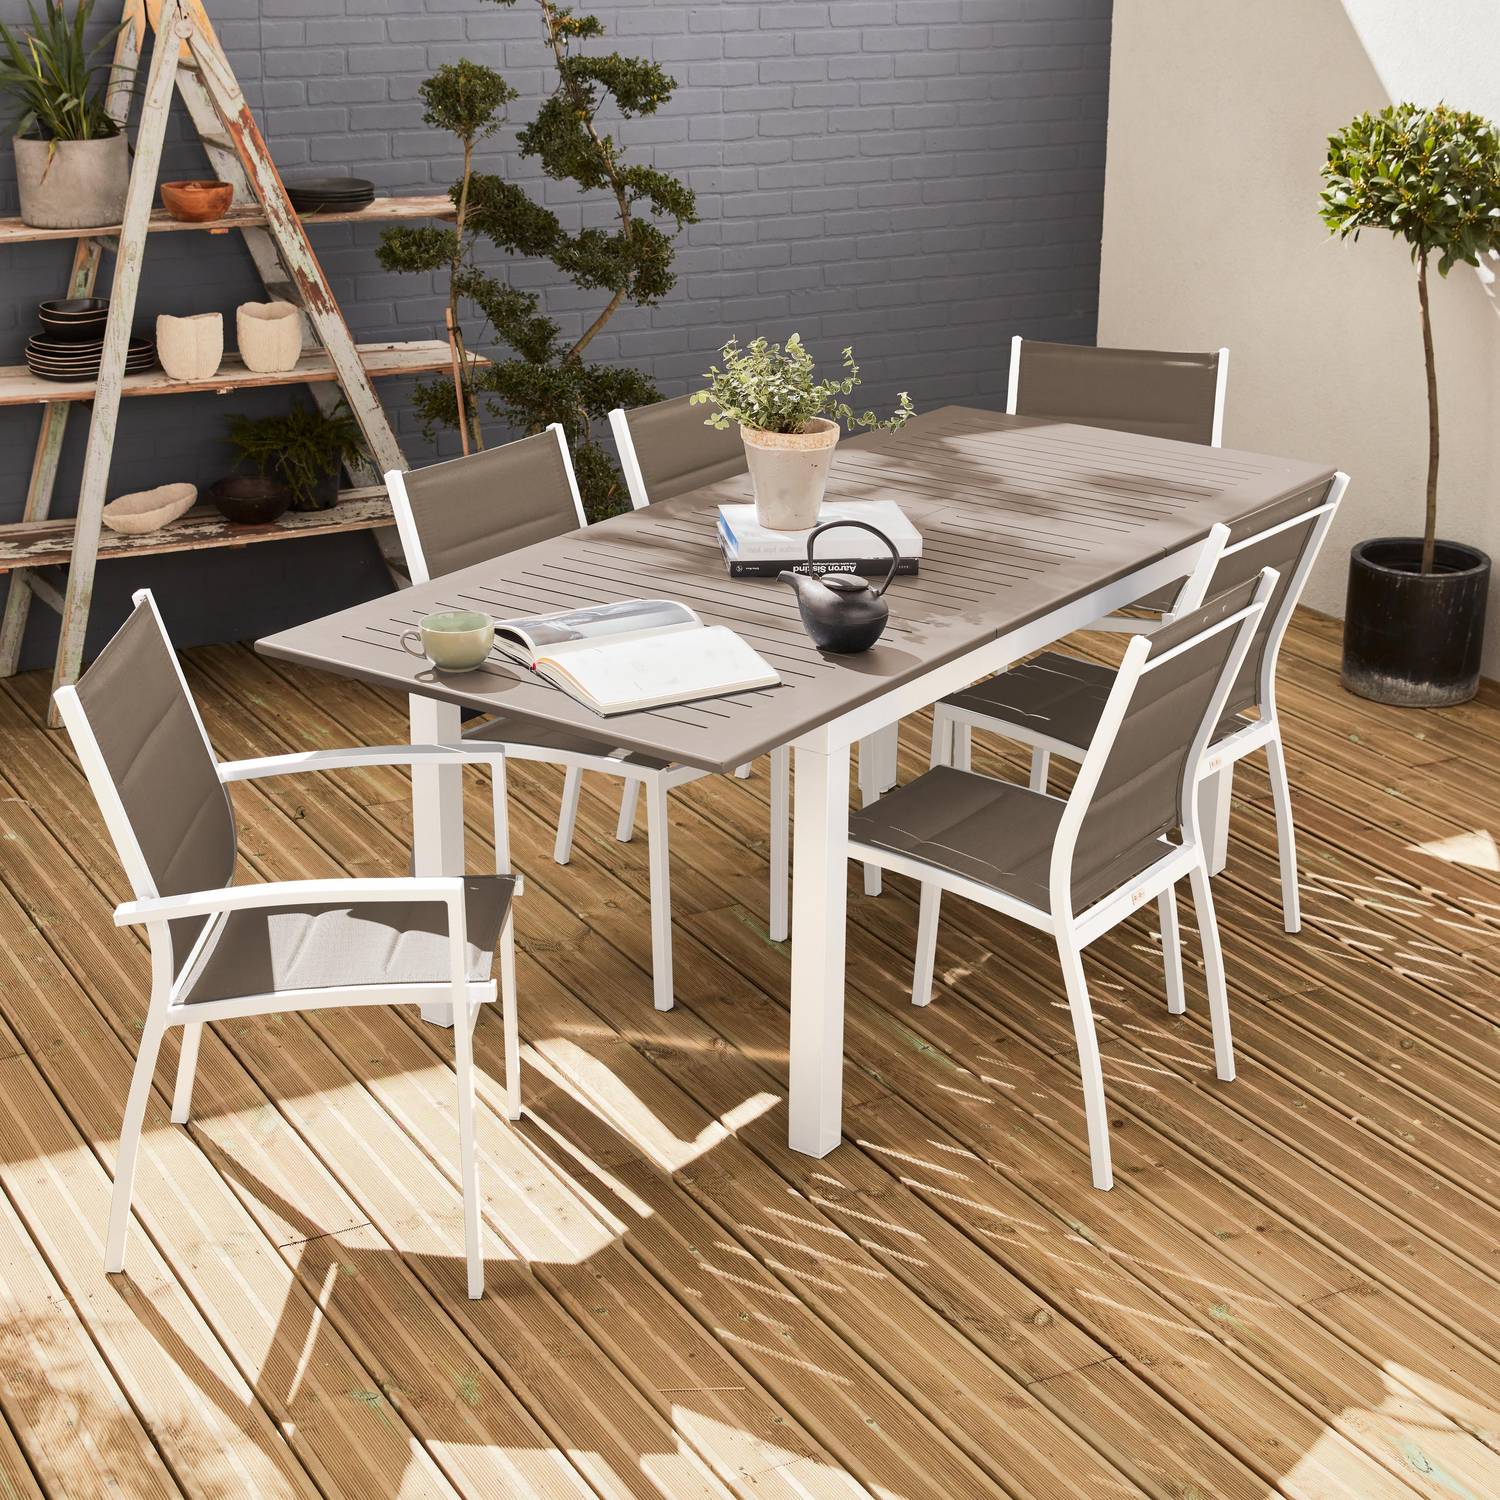 Set da giardino con tavolo allungabile - modello: Chicago 210, colore: Talpa - Tavolo in alluminio, dimensioni: 150/210cm con prolunga e 6 sedute in textilene Photo1